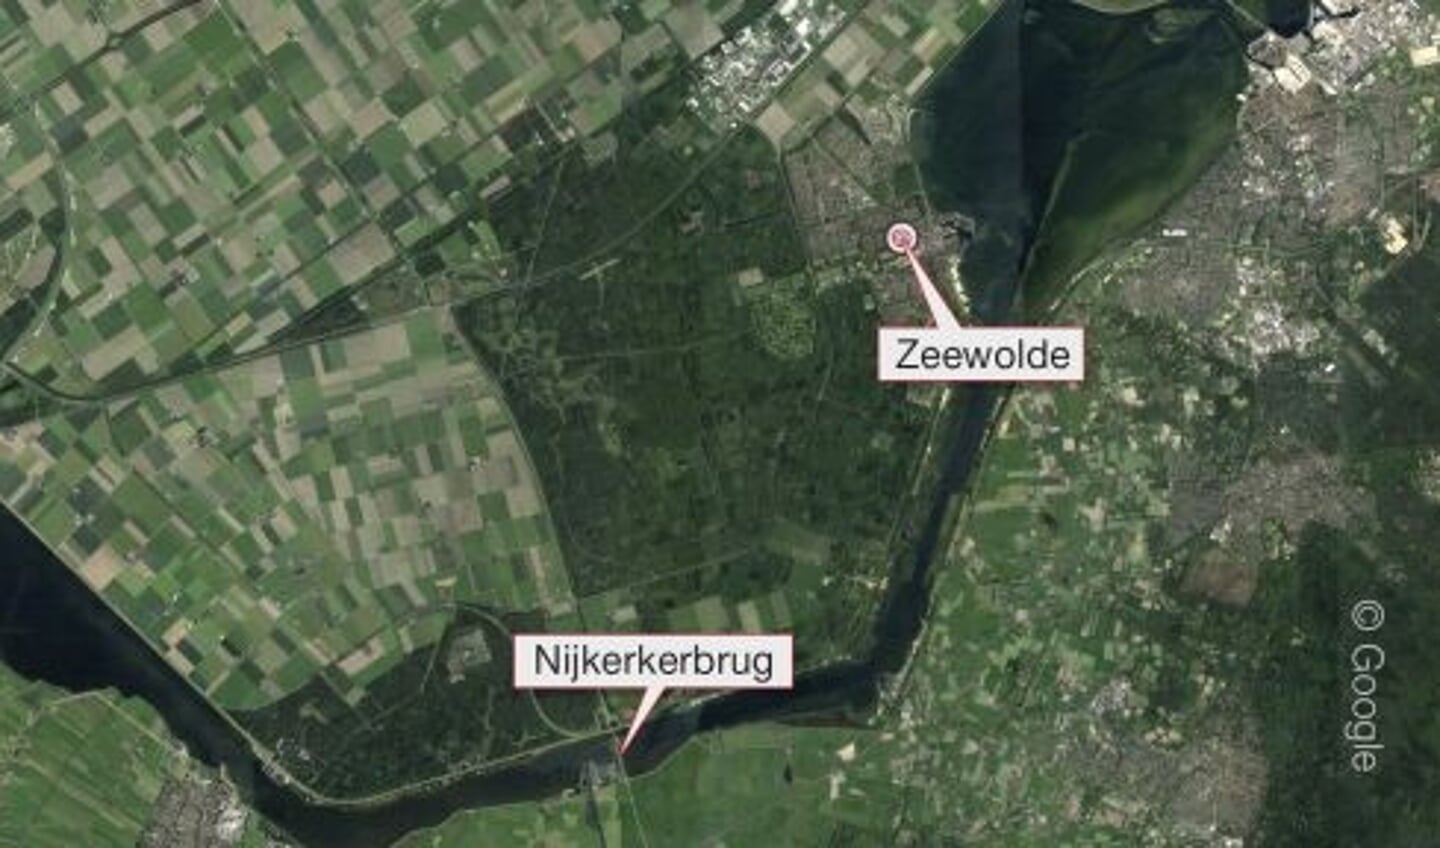 Het gebied nabij de Nijkerkerbrug in de gemeente Zeewolde zou de voorkeur hebben van Defensie voor het realiseren van een kazerne. 